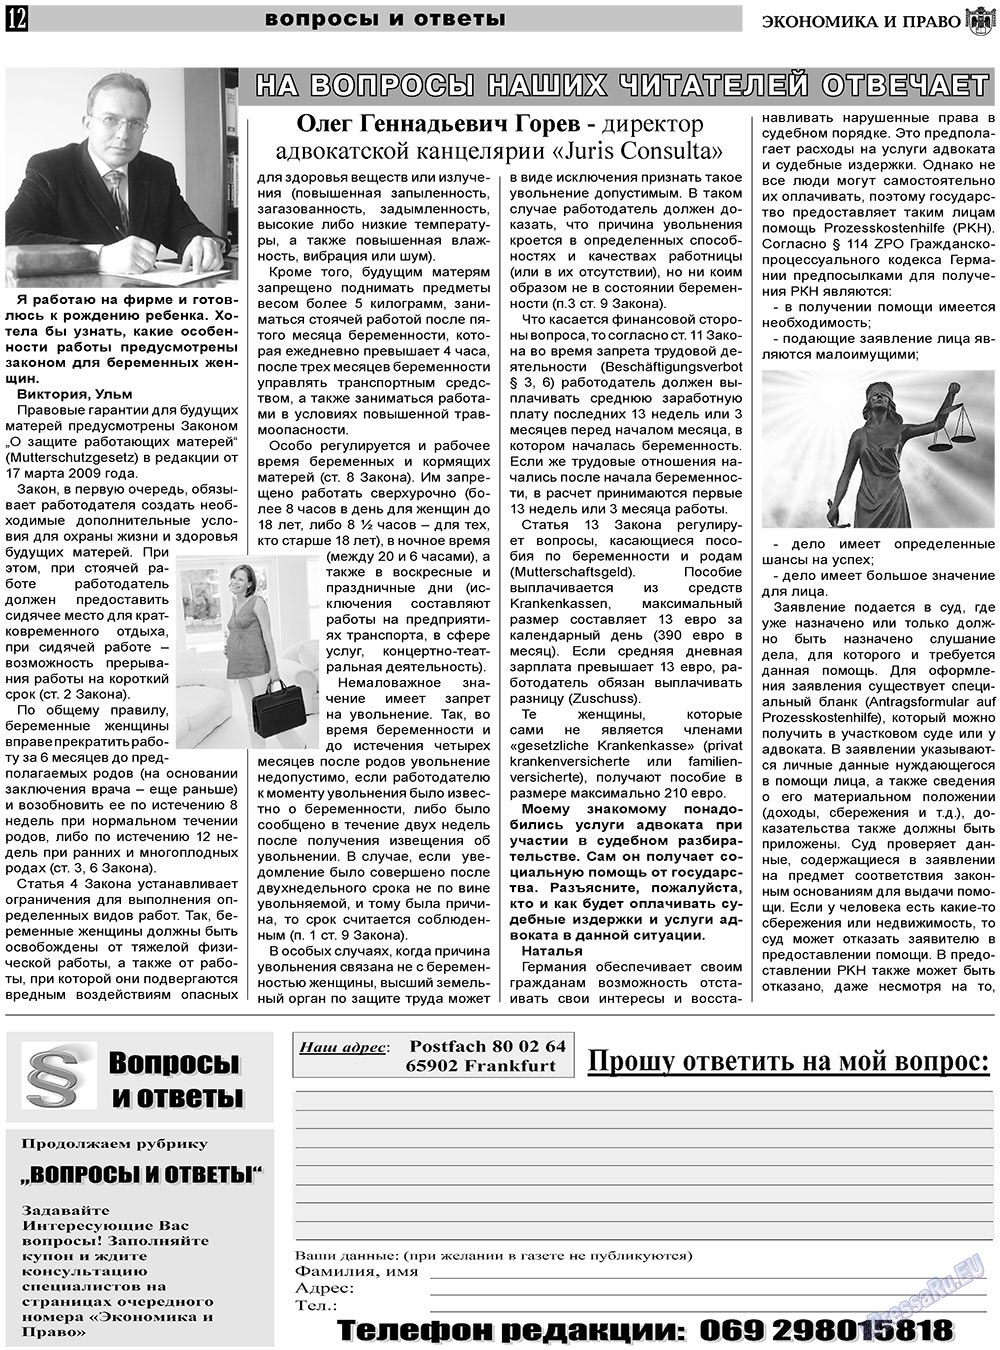 Экономика и право, газета. 2011 №1 стр.12